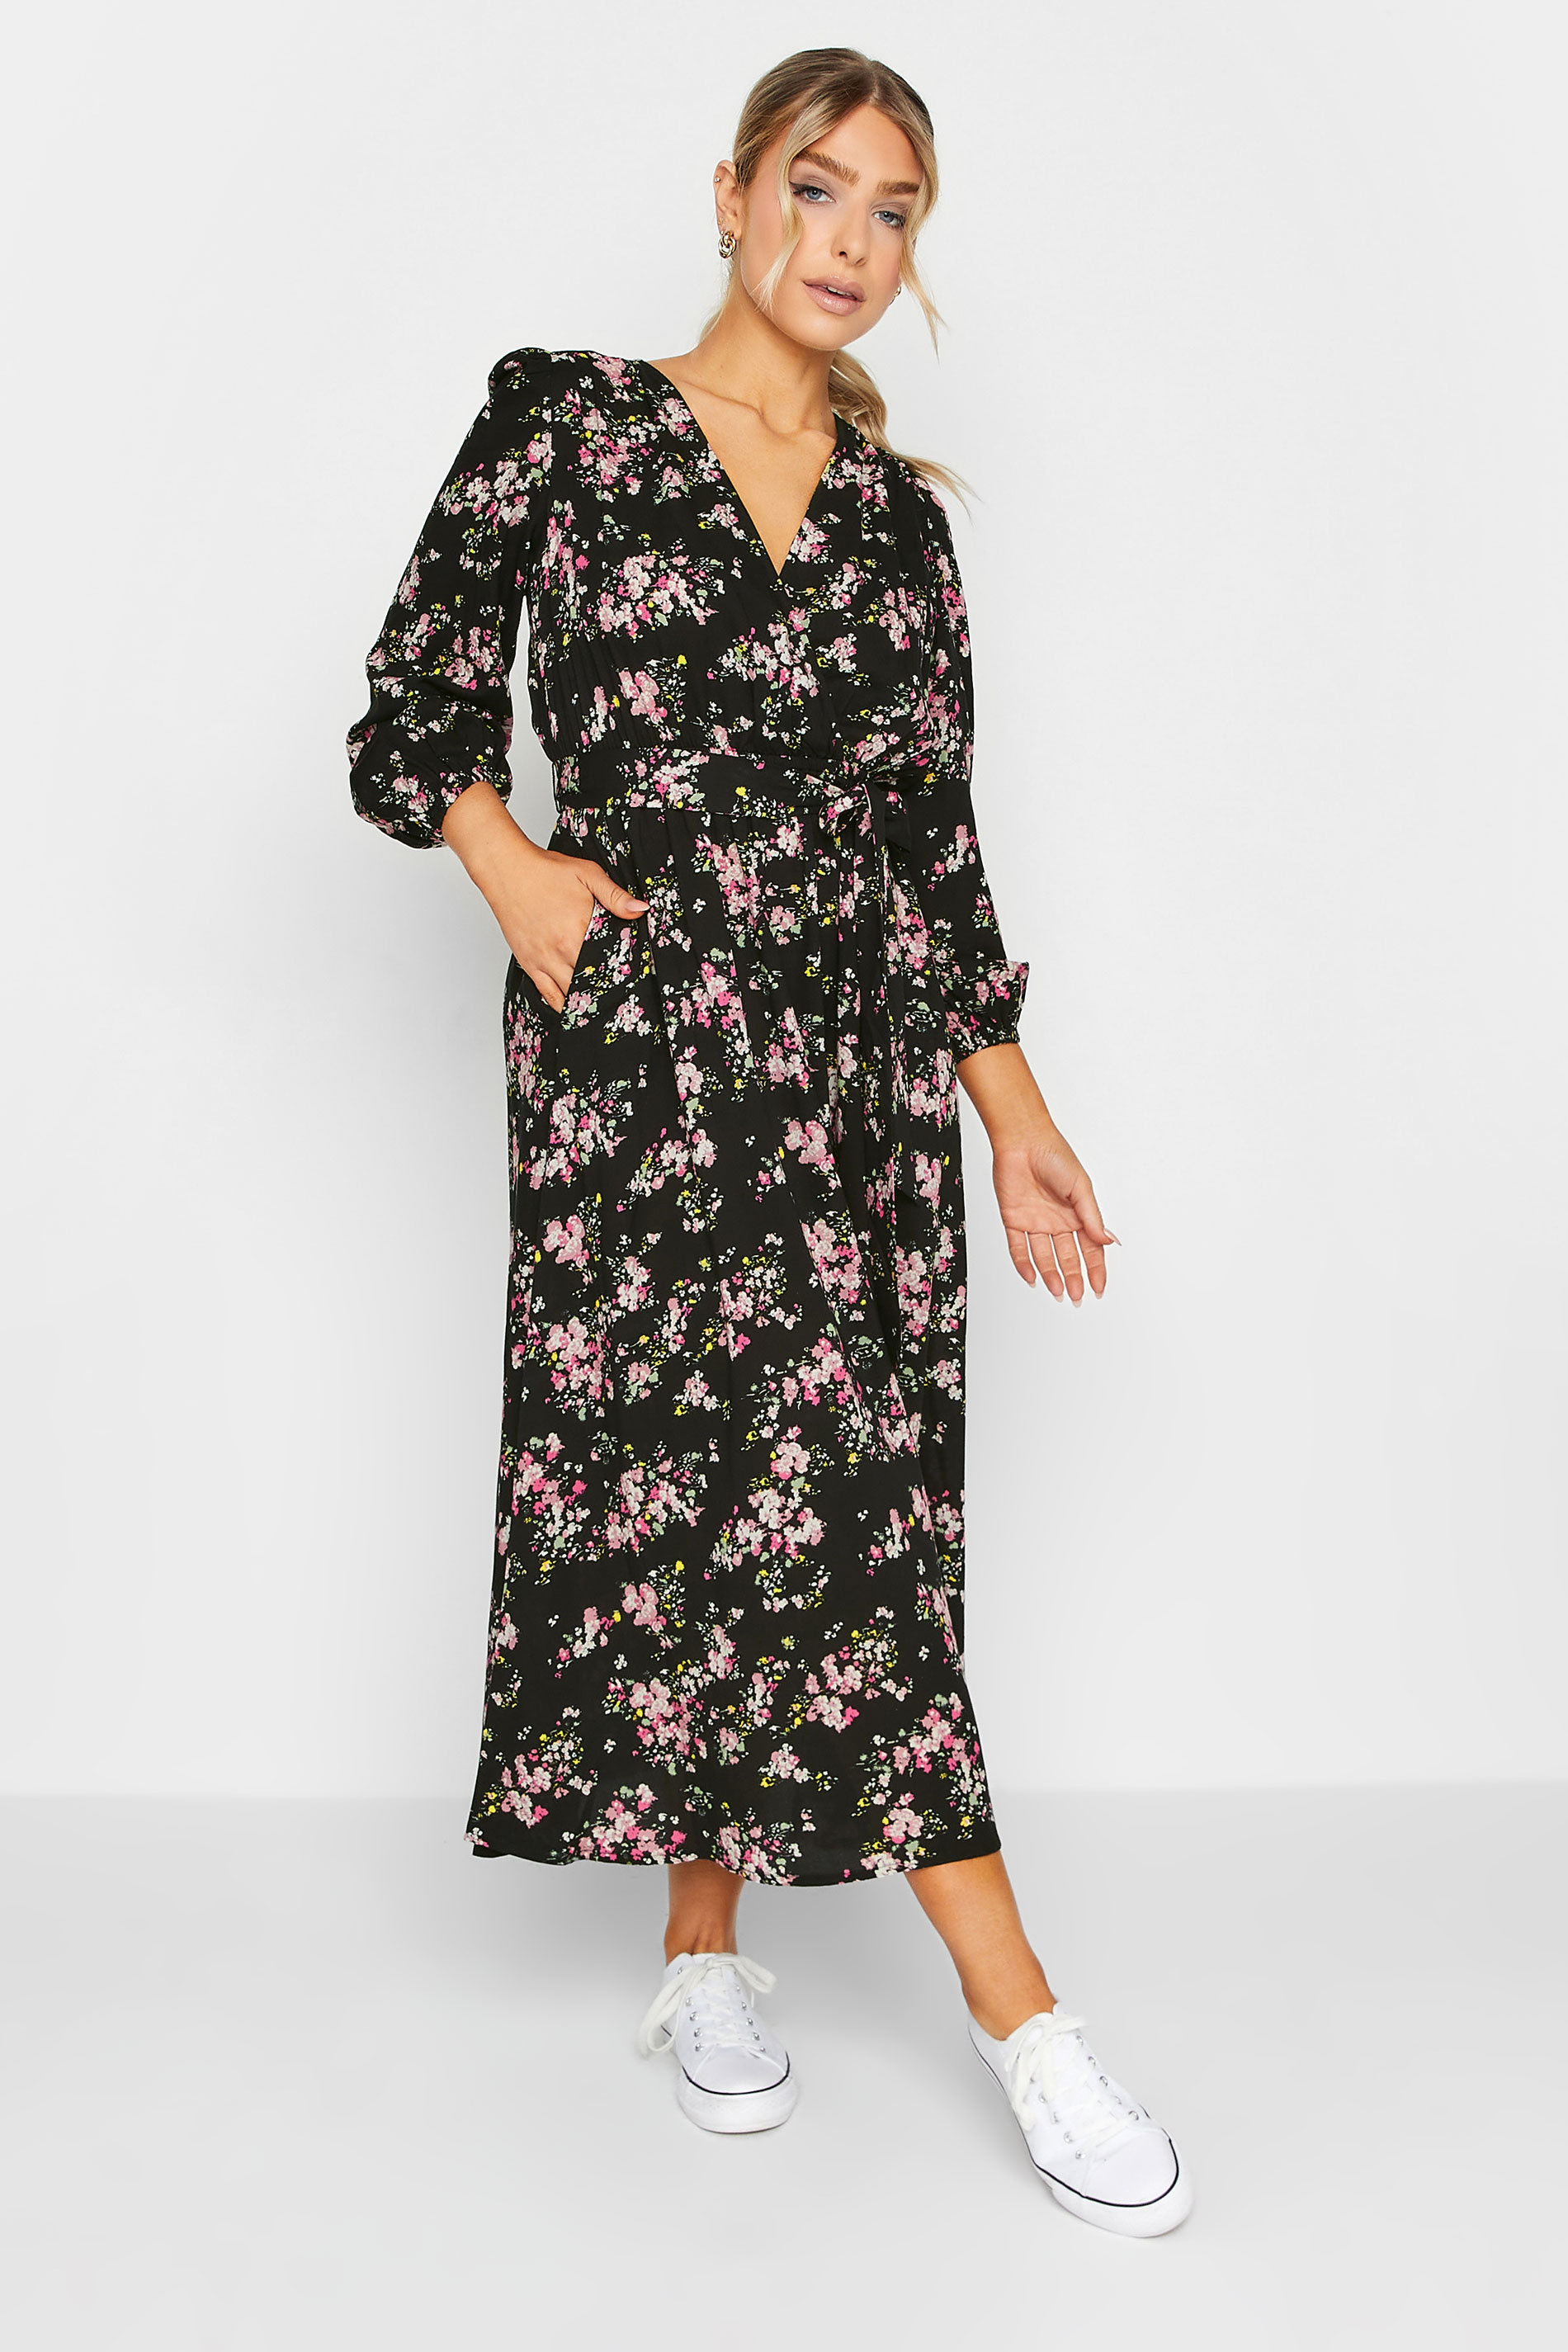 M&Co Black & Pink Floral Print Wrap Front Dress | M&Co  1